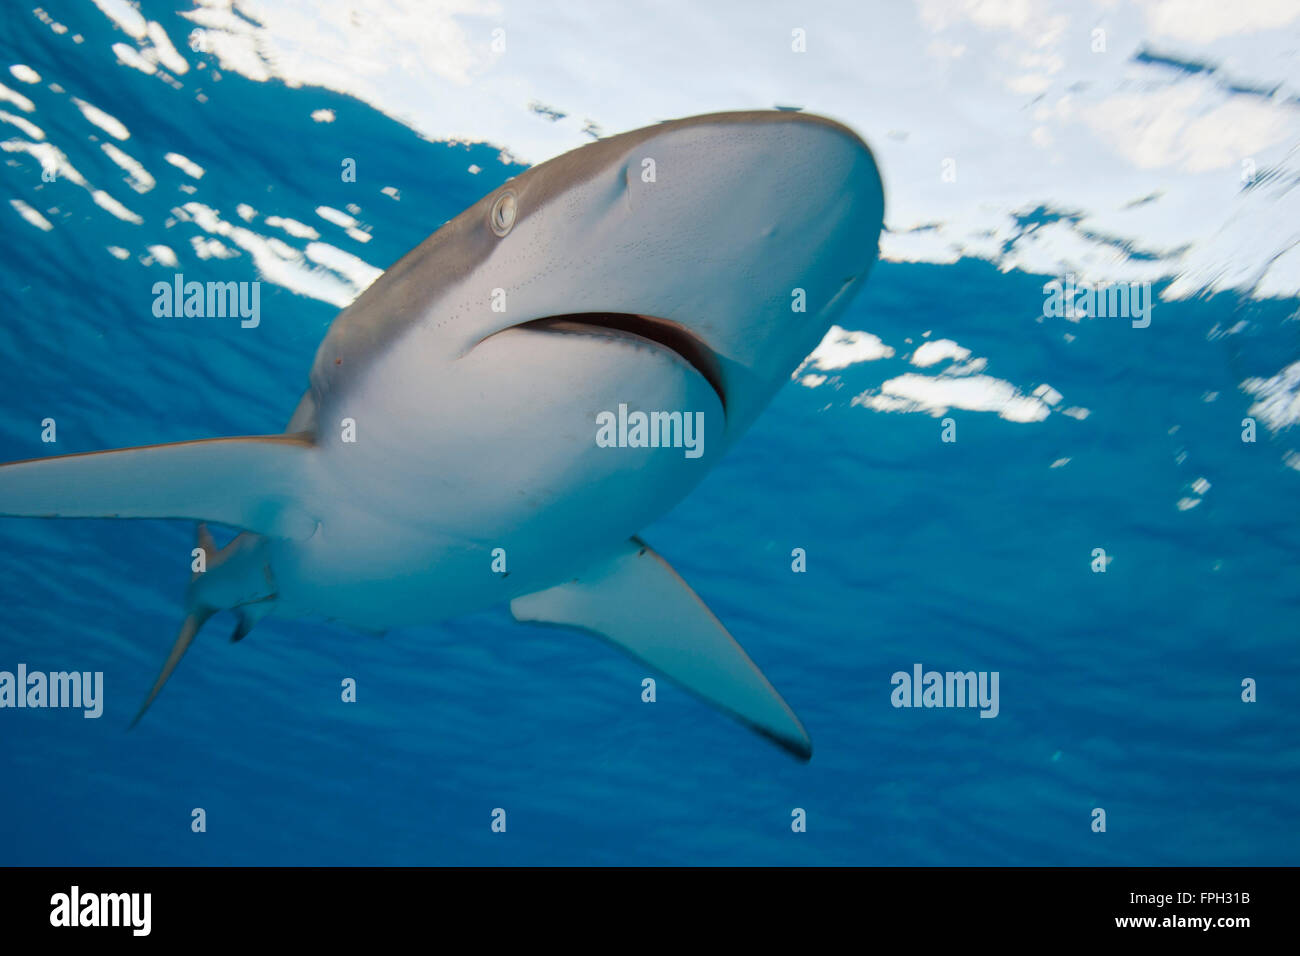 Seidige Hai (Carcharhinus Falciformis) Ventral view from below zeigt Mund, Nase und Glasphiolen Lorenzini, die elektrische Stockfoto